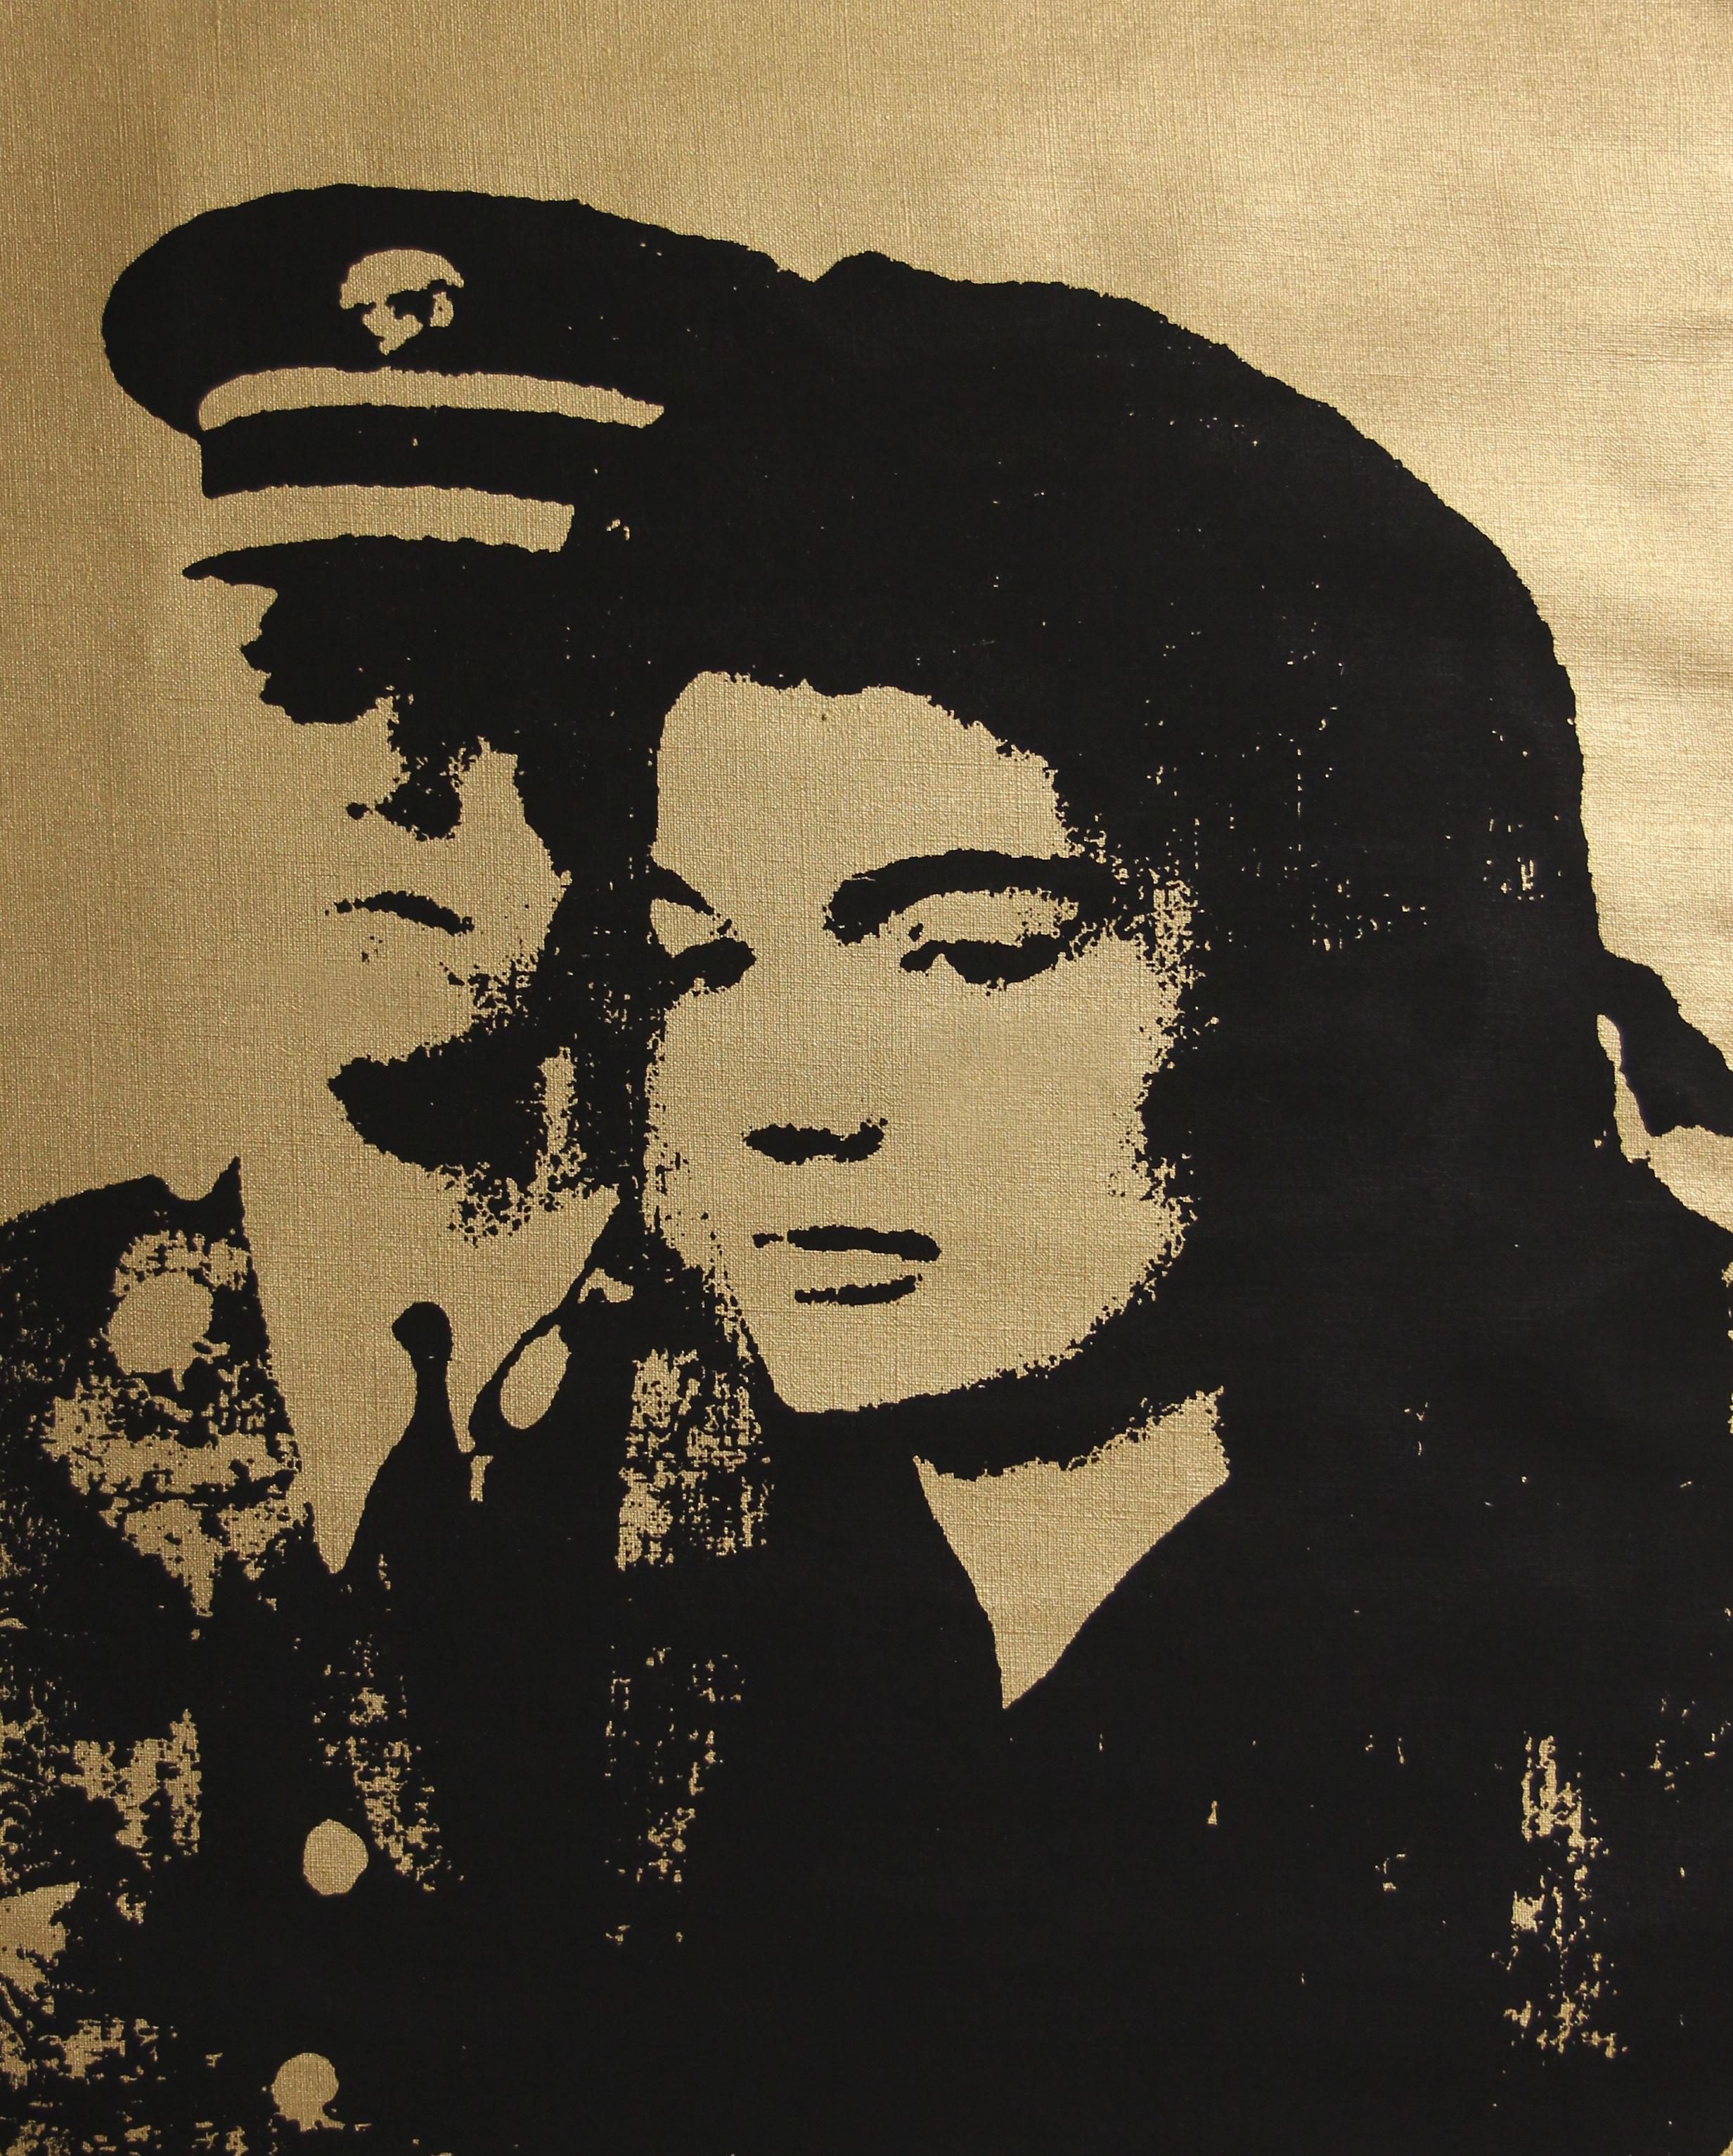 Verweigerter Warhol Jackie in Schwarz und Gold von Charles Lutz
Siebdruck und goldene Sprühemaille auf Vintage-Leinen aus den 1960er Jahren mit Verweigerungsstempel des Andy Warhol Art Authentication Board.
20 x 16" Zoll
2008

Lutz' Serie "Warhol